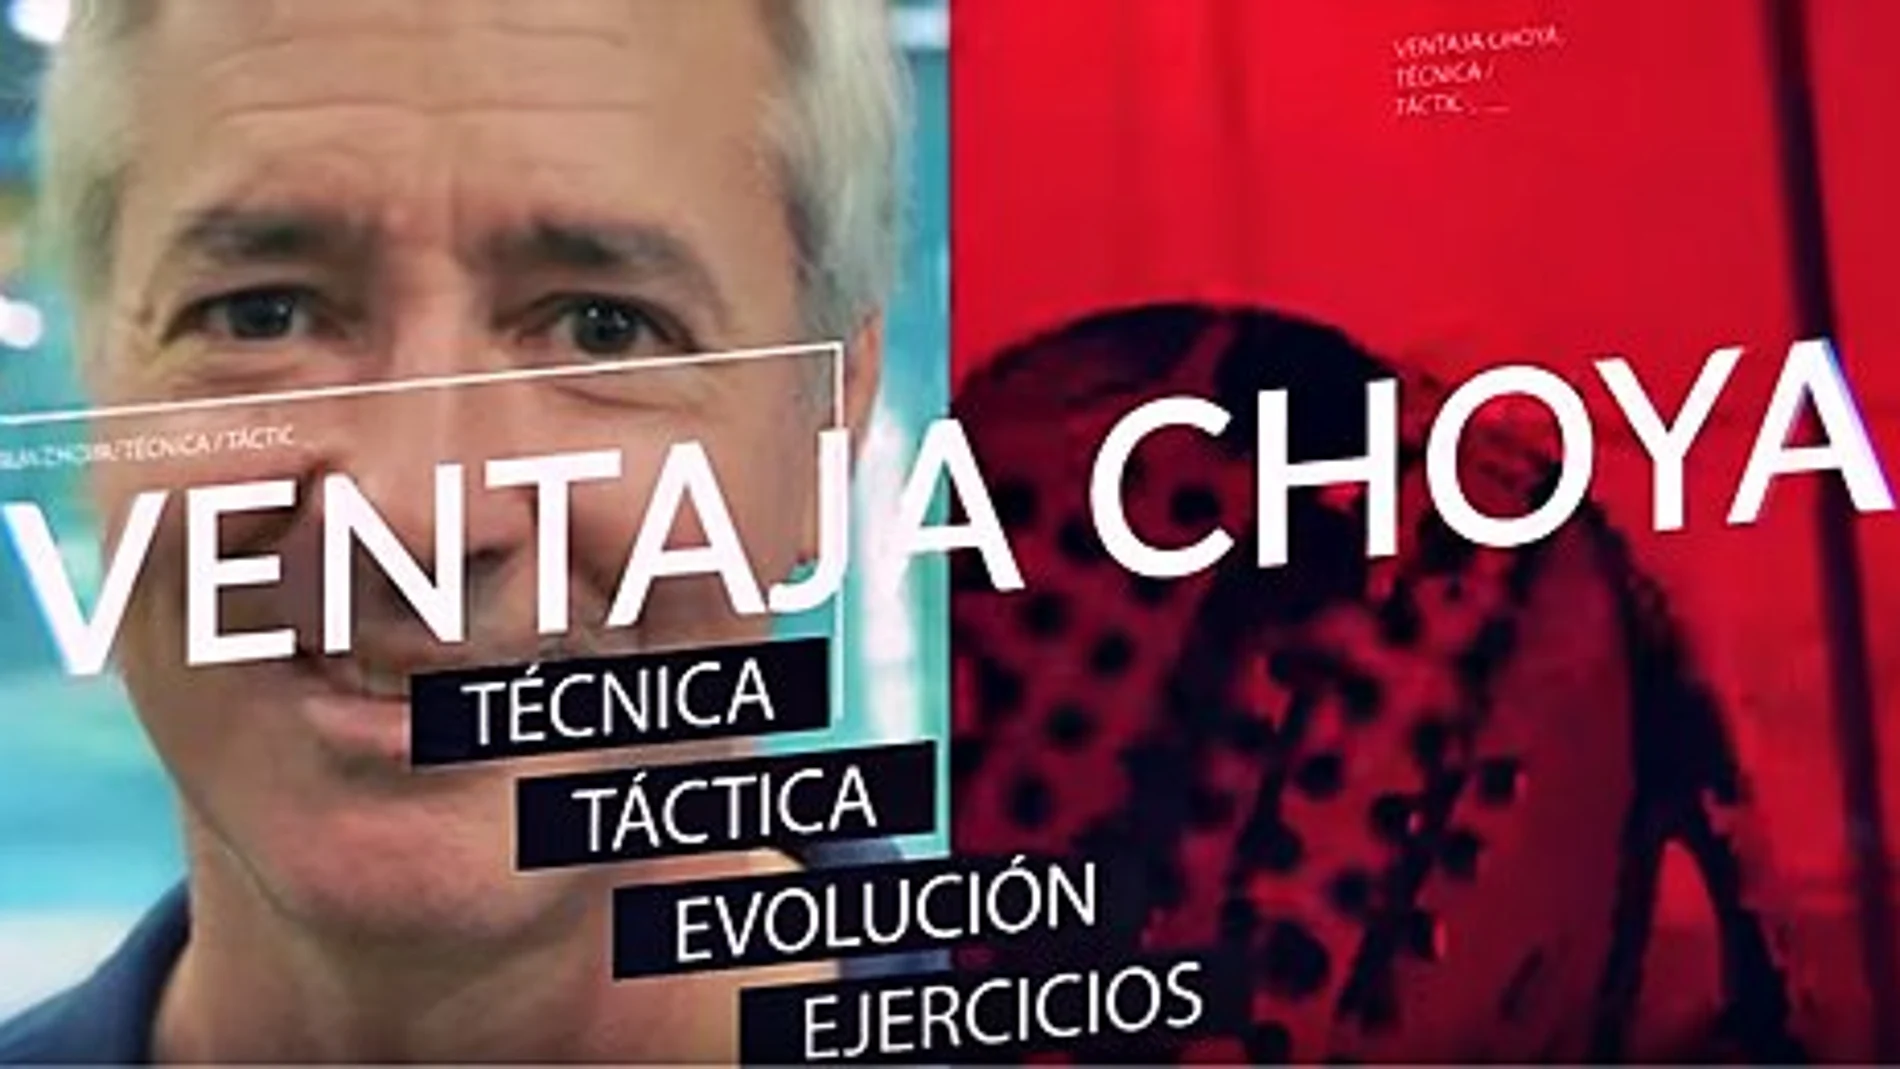 Nuevos vídeos de Ramiro Choya